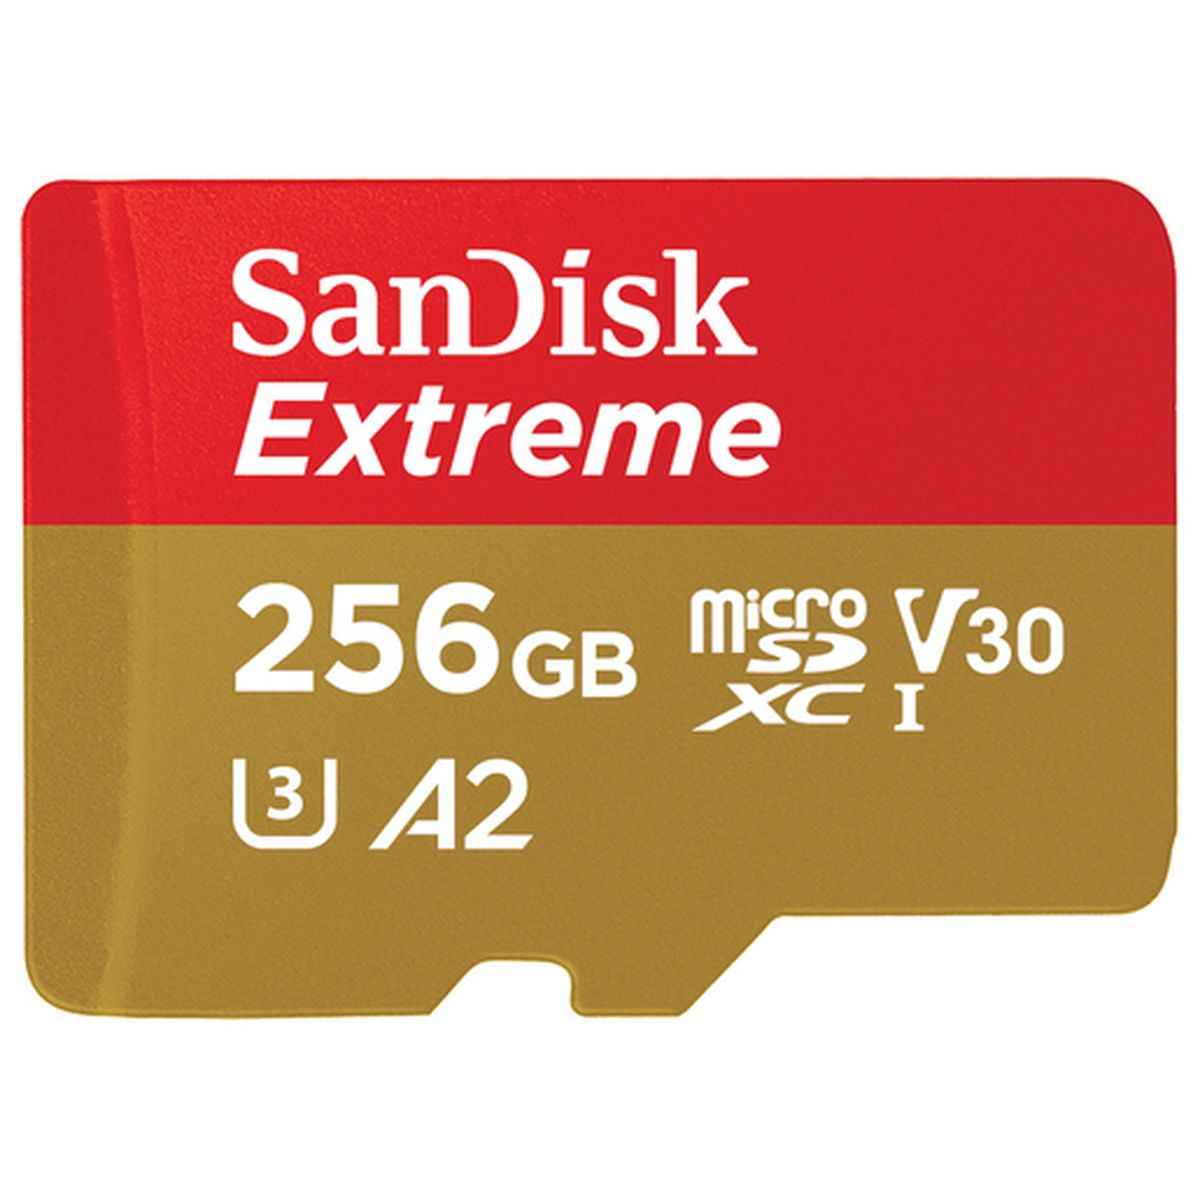 SanDisk Extreme 256GB microSDXC 190 MB/s 